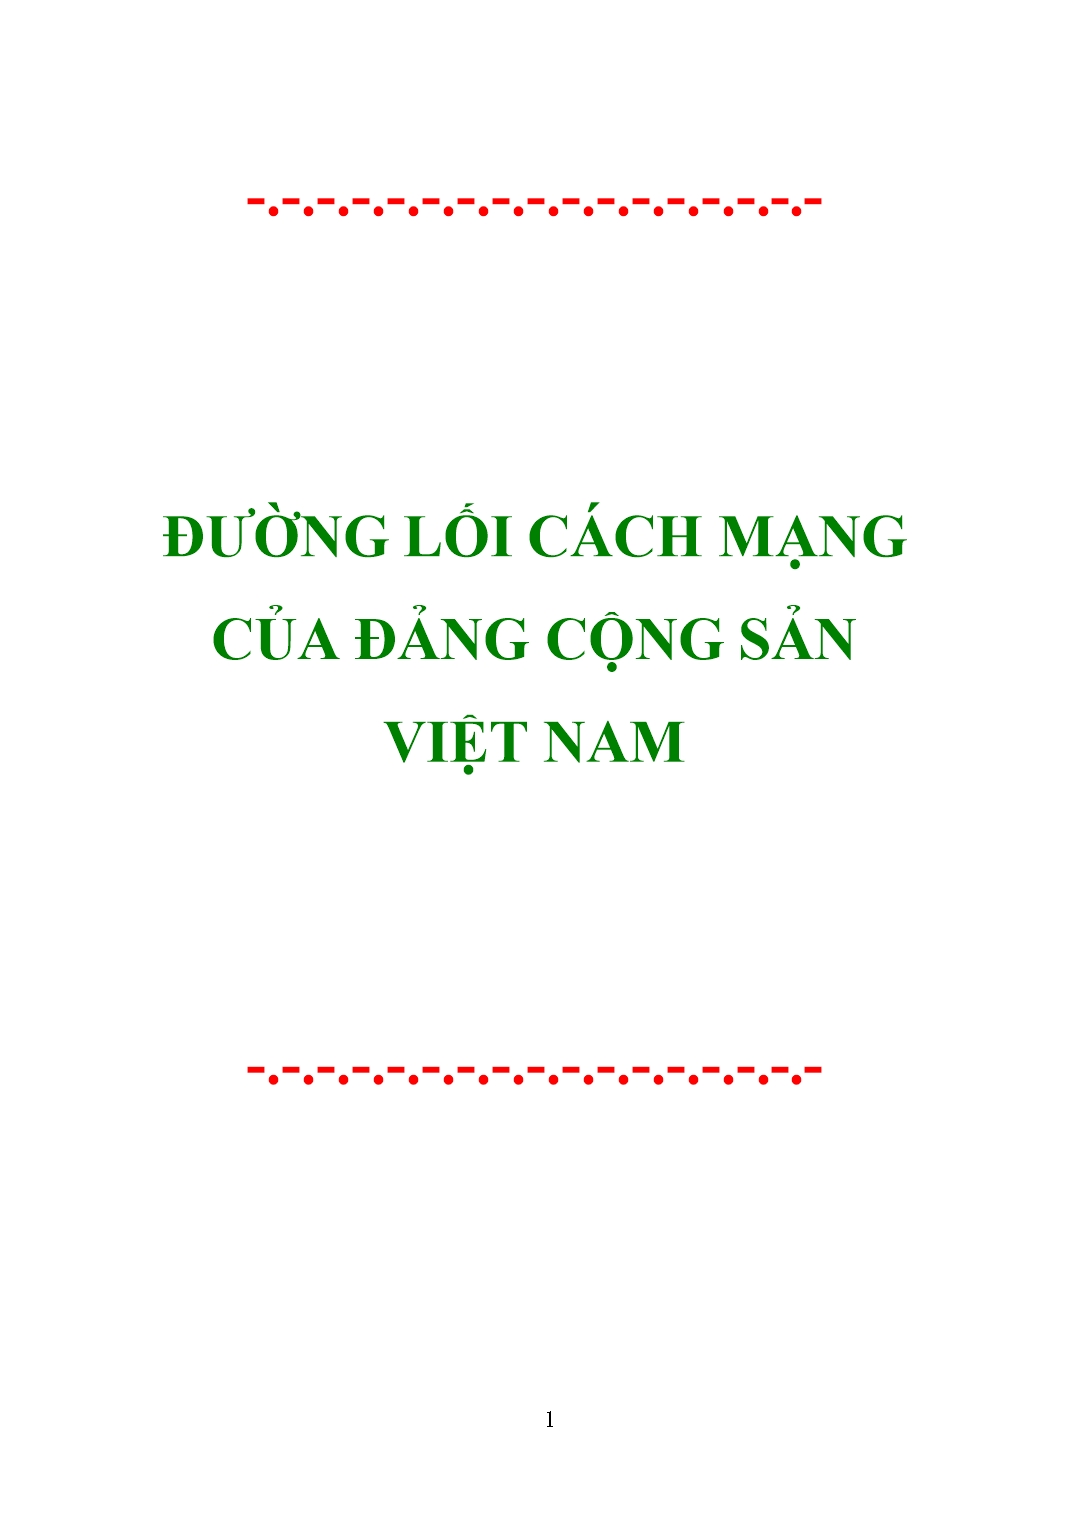 Giáo trình Đường lối cách mạng của Đảng cộng sản Việt Nam trang 1